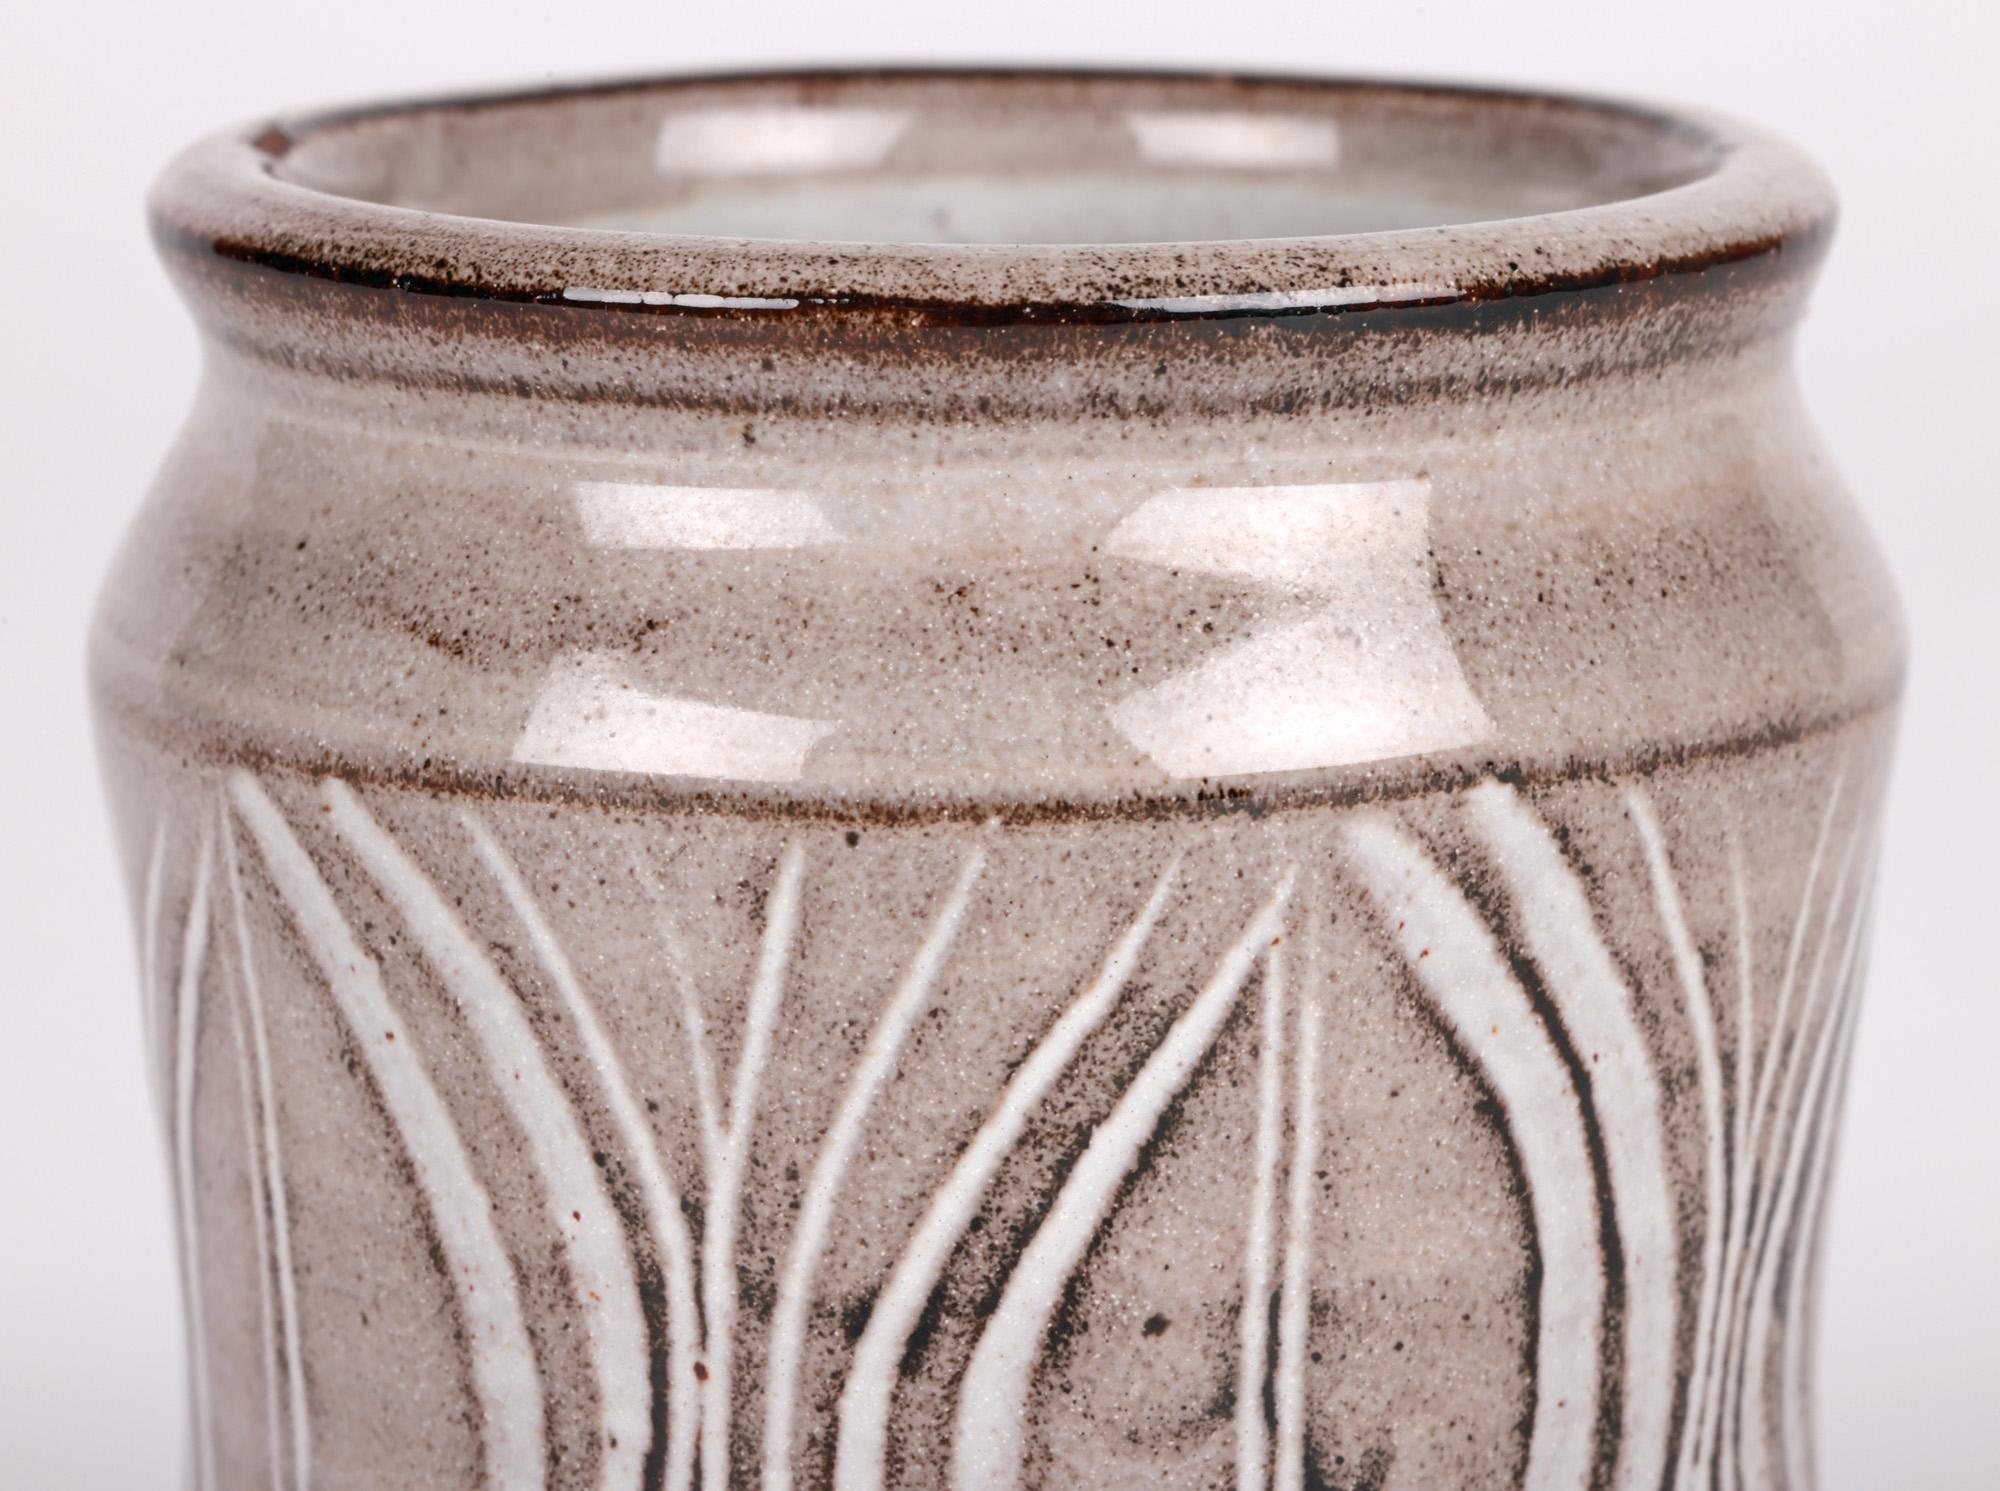 Ravissant vase de forme Albarello en grès de Lowerdown Pottery, décoré à la main de motifs de gousses de graines par le célèbre potier David Leach (britannique, 1911-2005), datant d'environ 1970. Le vase en terre cuite, tourné à la main, repose sur